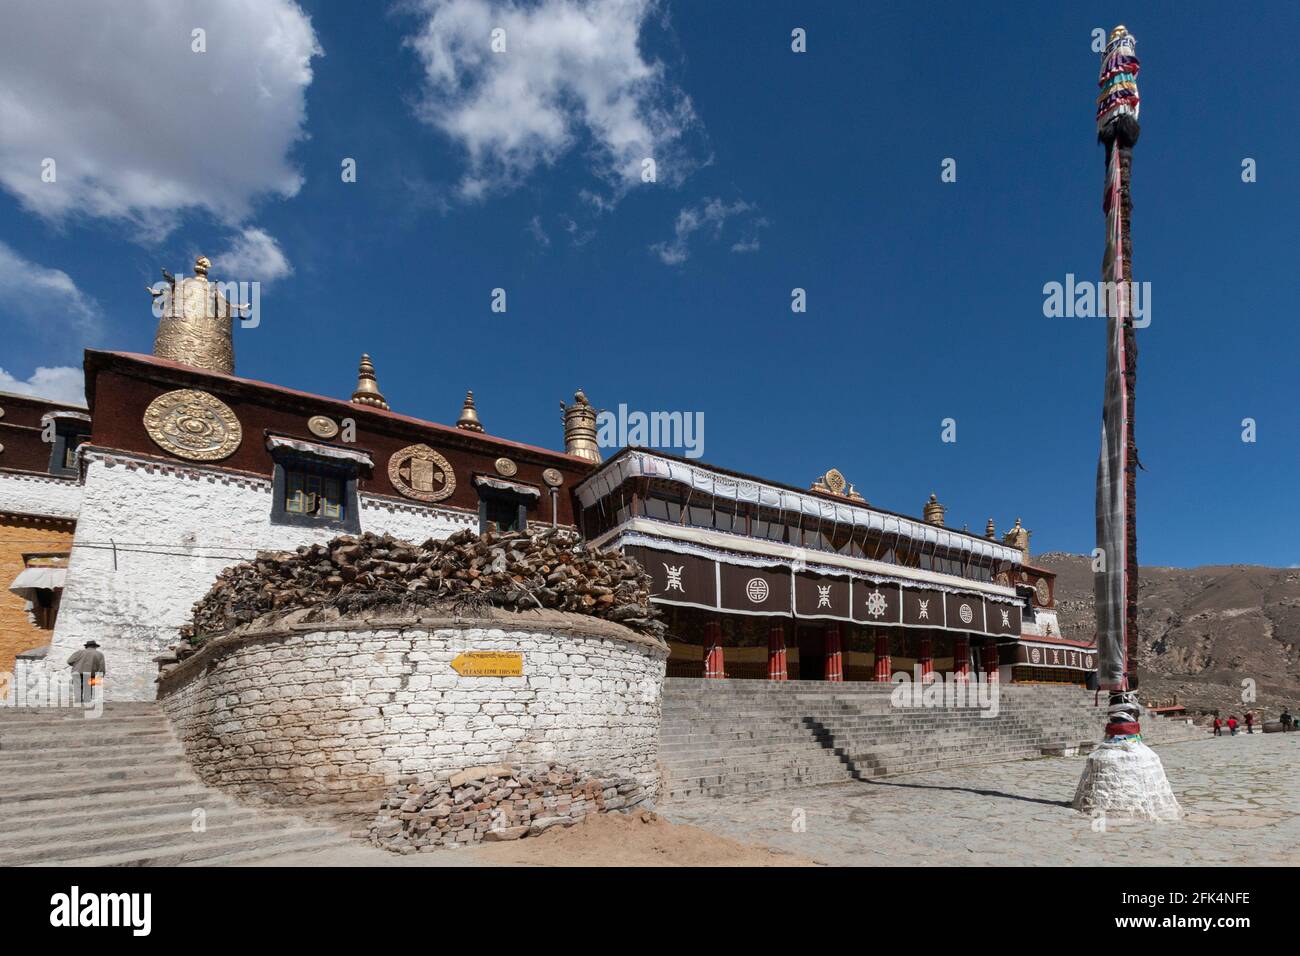 Monastère bouddhiste de Drepung près de Lhassa dans la région autonome du Tibet en Chine. Un des "trois grands" Gelug université gompas (monastères) du Tibet Banque D'Images